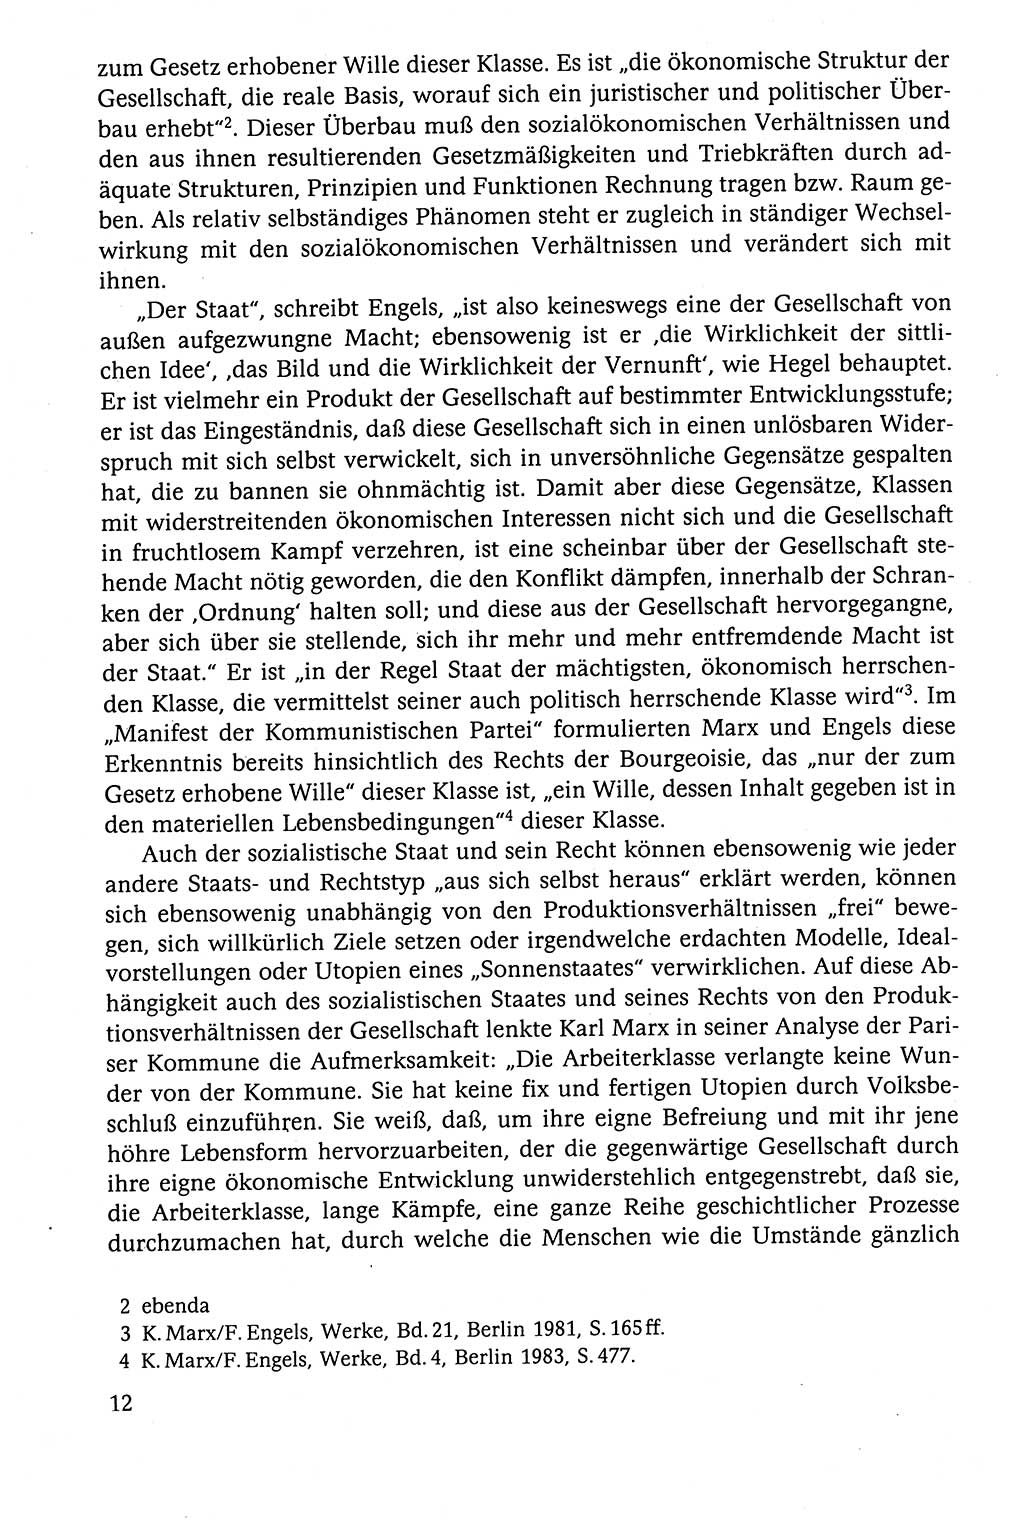 Der Staat im politischen System der DDR (Deutsche Demokratische Republik) 1986, Seite 12 (St. pol. Sys. DDR 1986, S. 12)